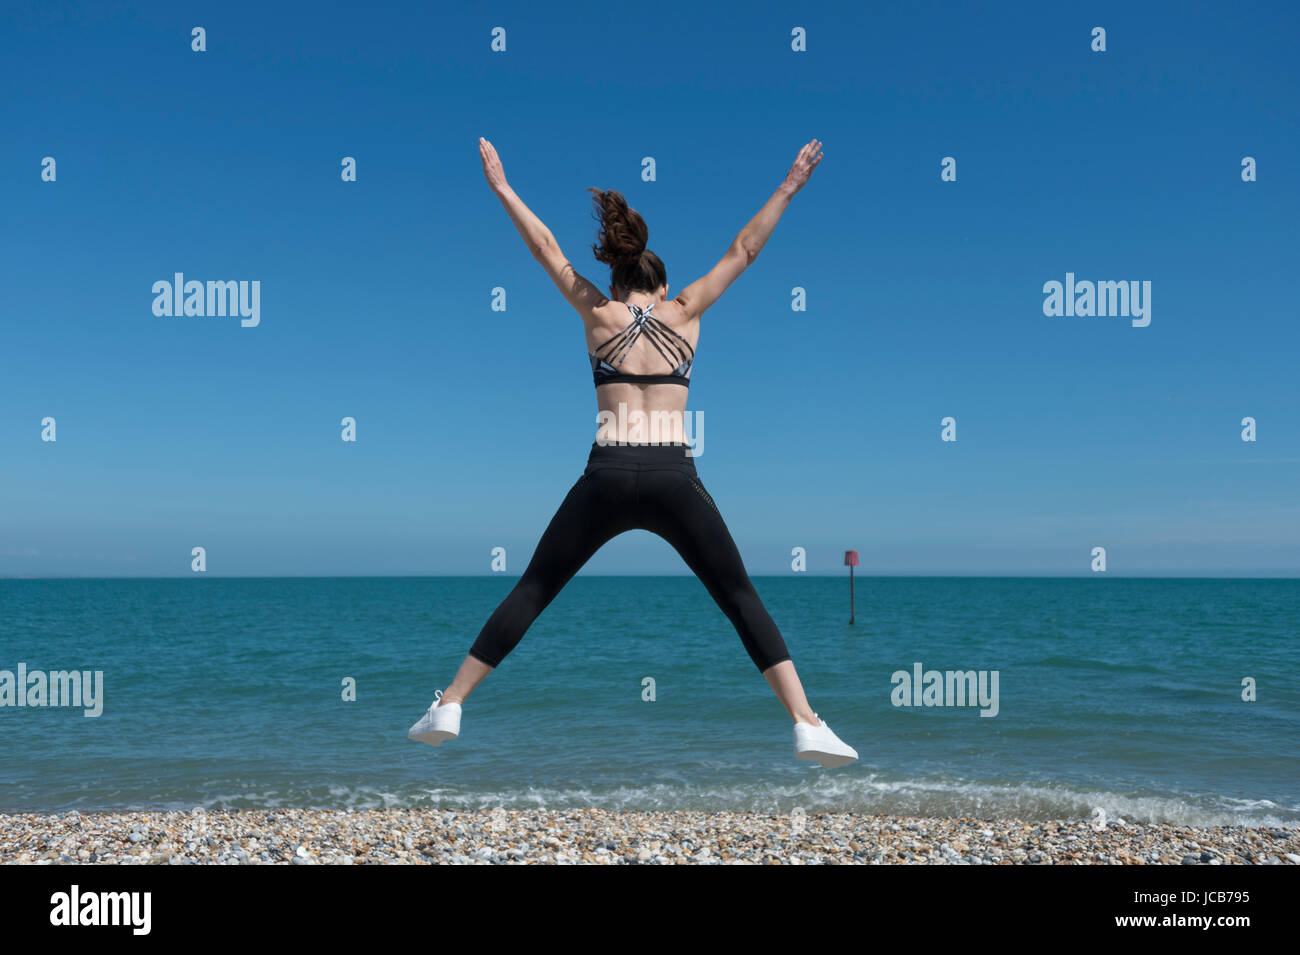 Femme faisant une star jump sur la plage Banque D'Images